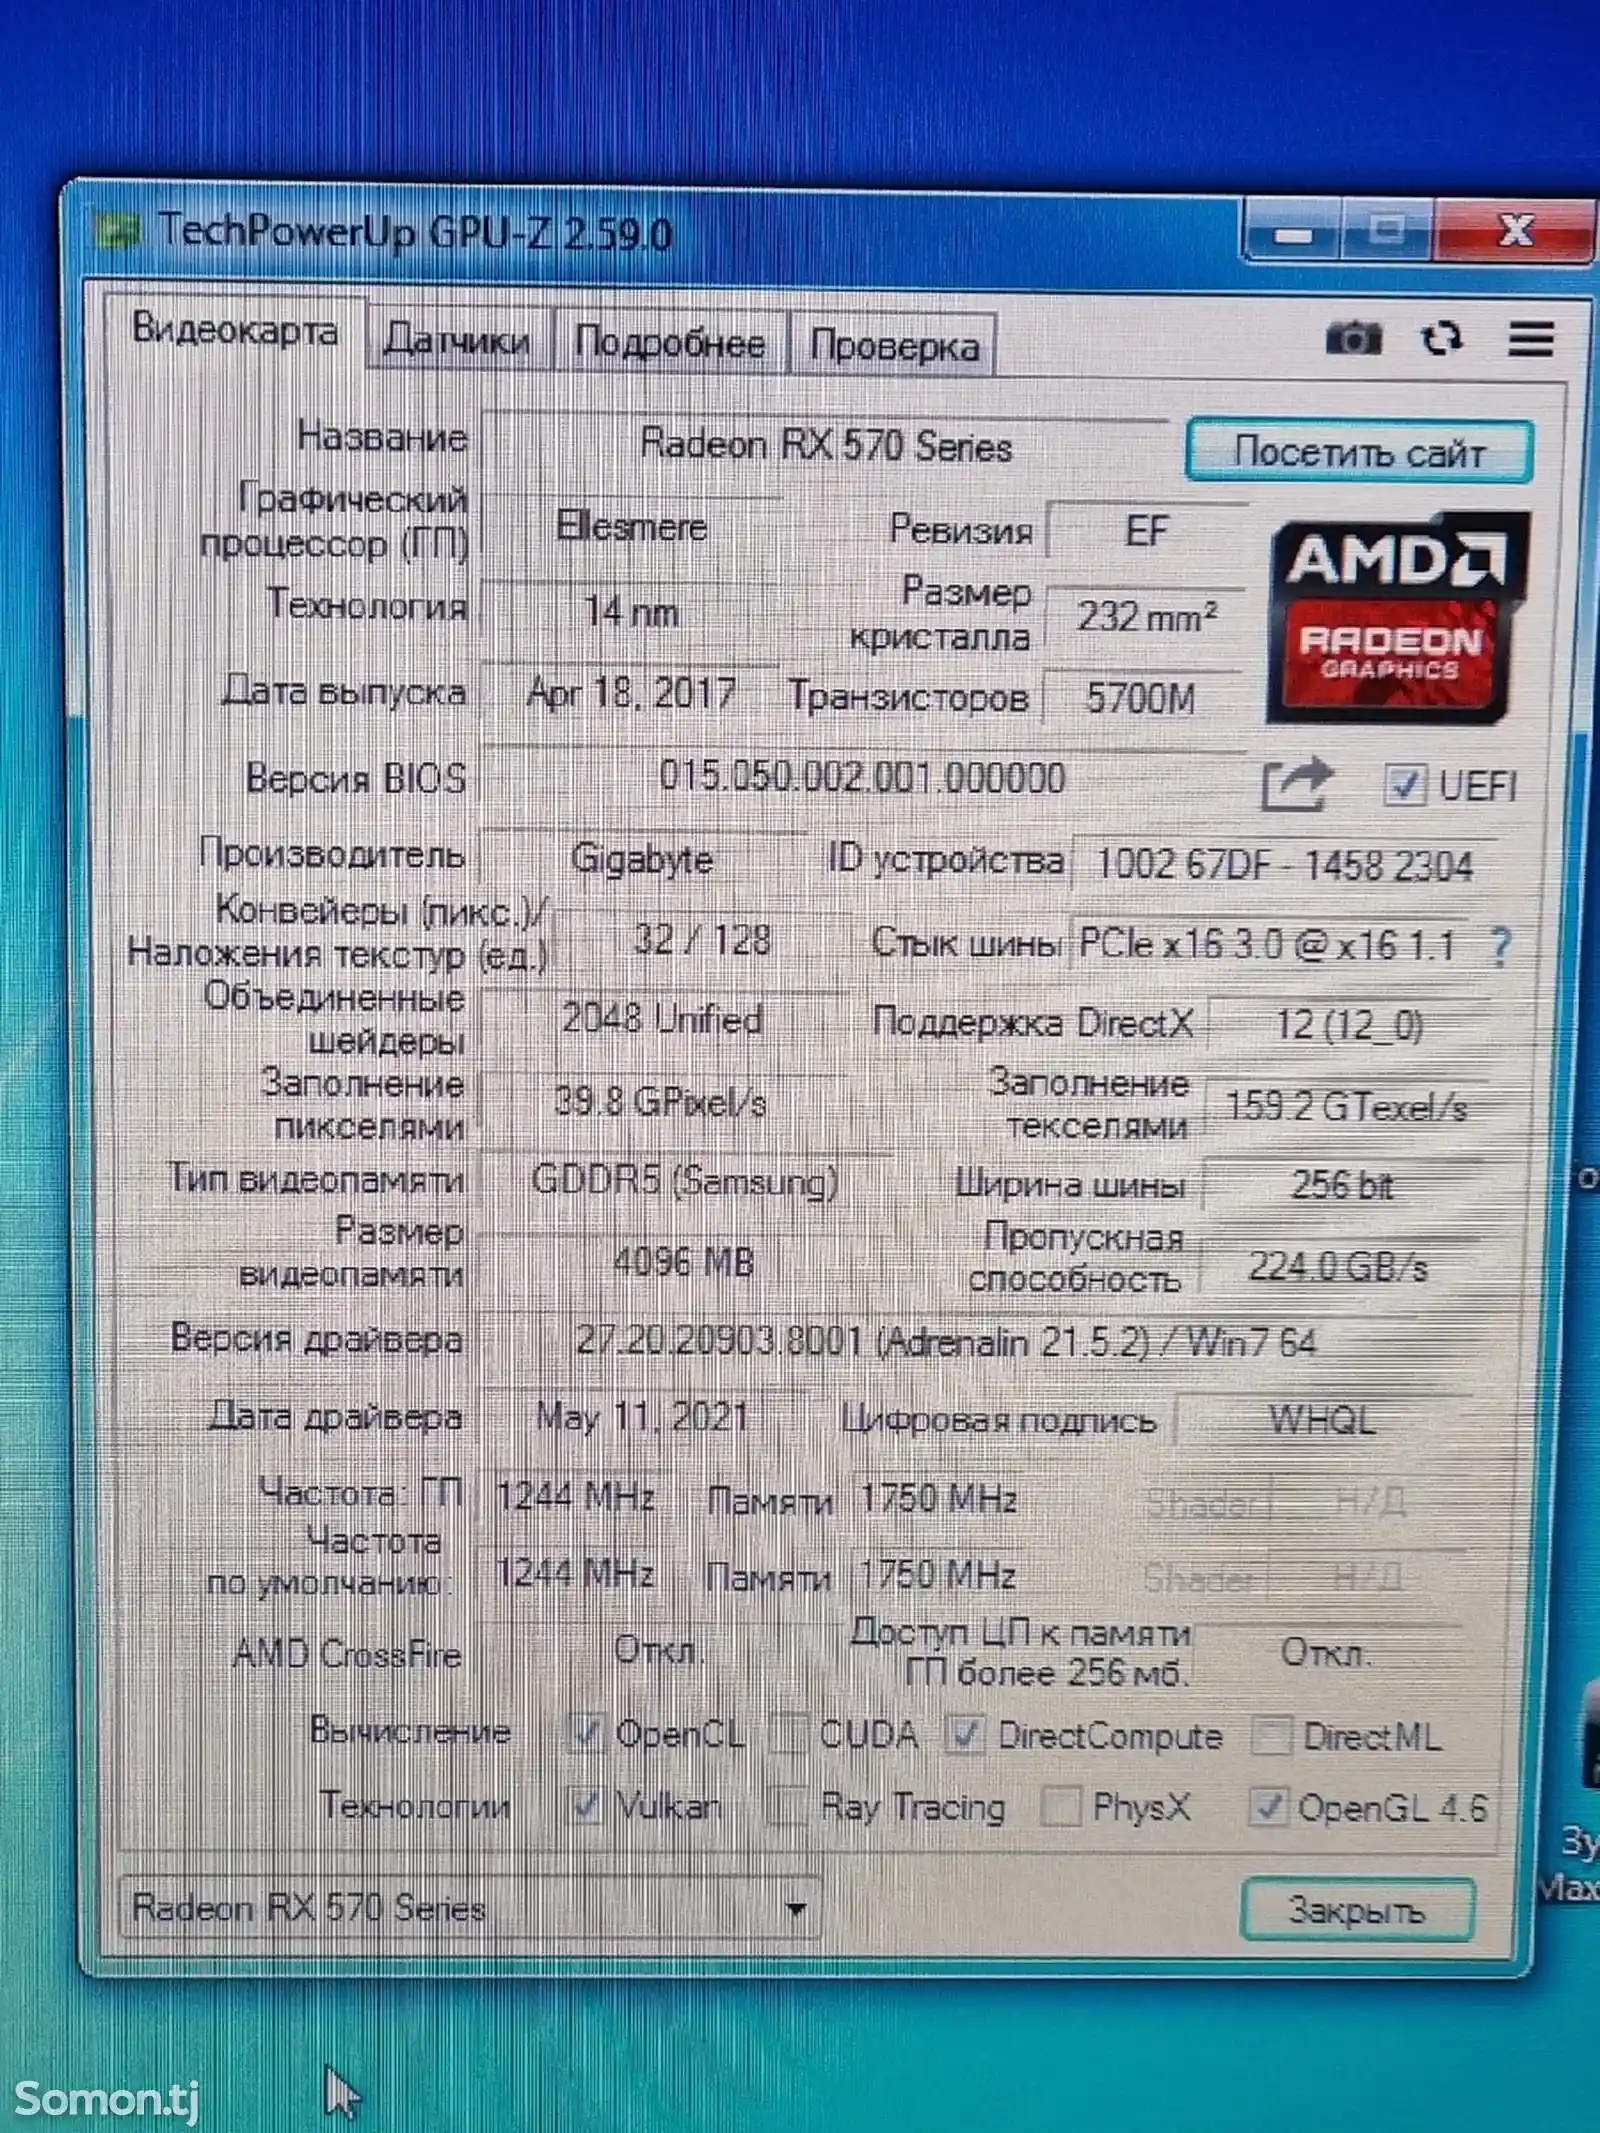 Видеокарта AMD radeon rx 570 4gb 256 bit ddr 5-5